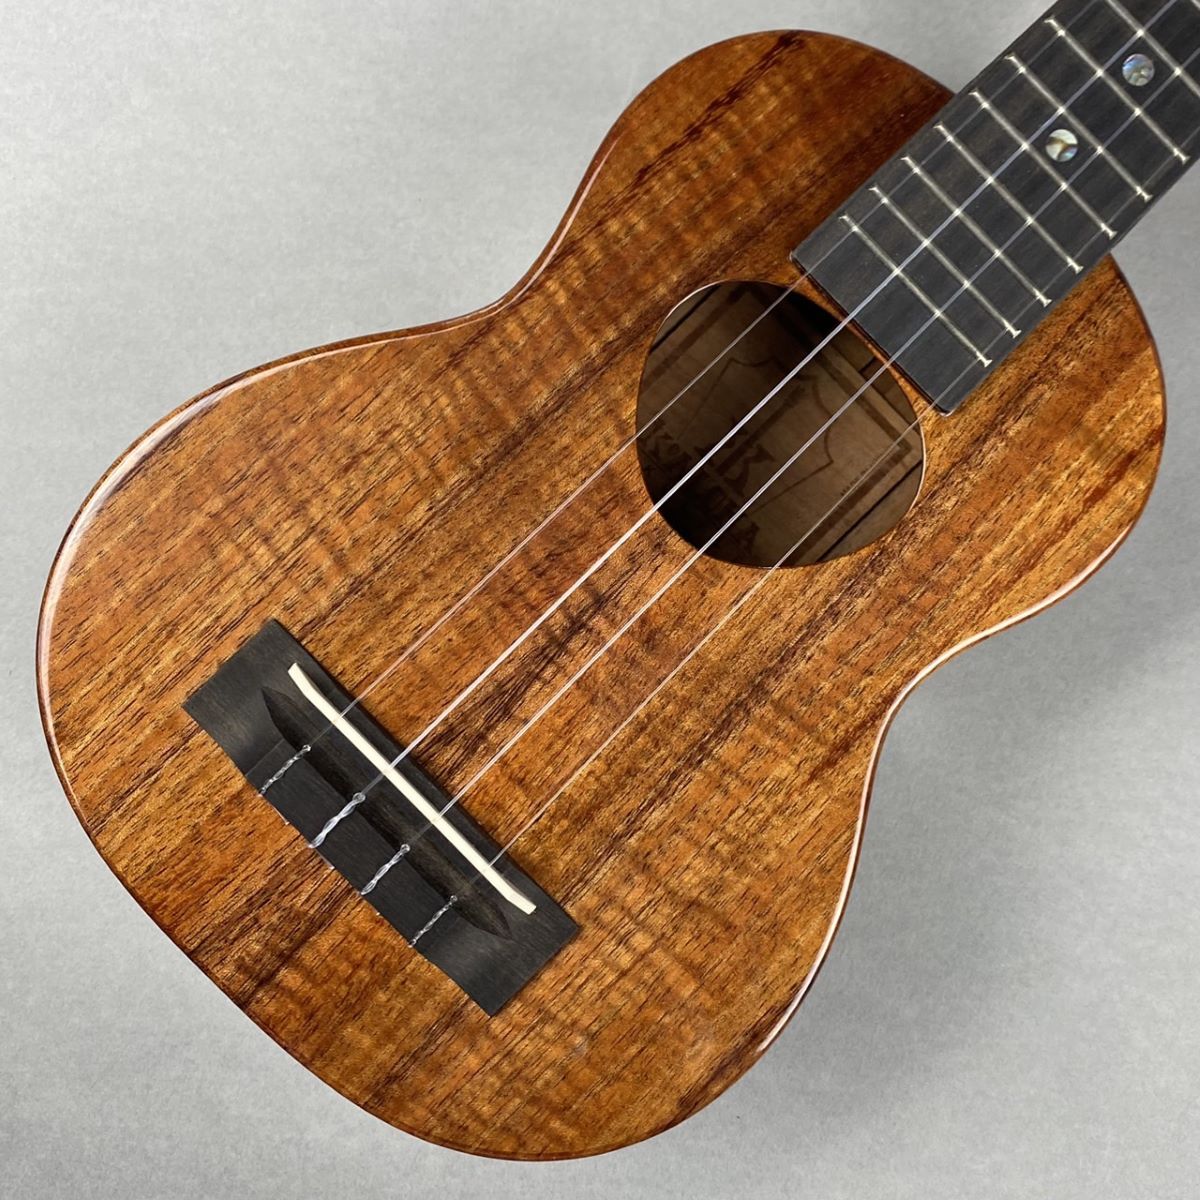 【2007年製】KoAloha KSM-00 / ukulele【ハワイ産】